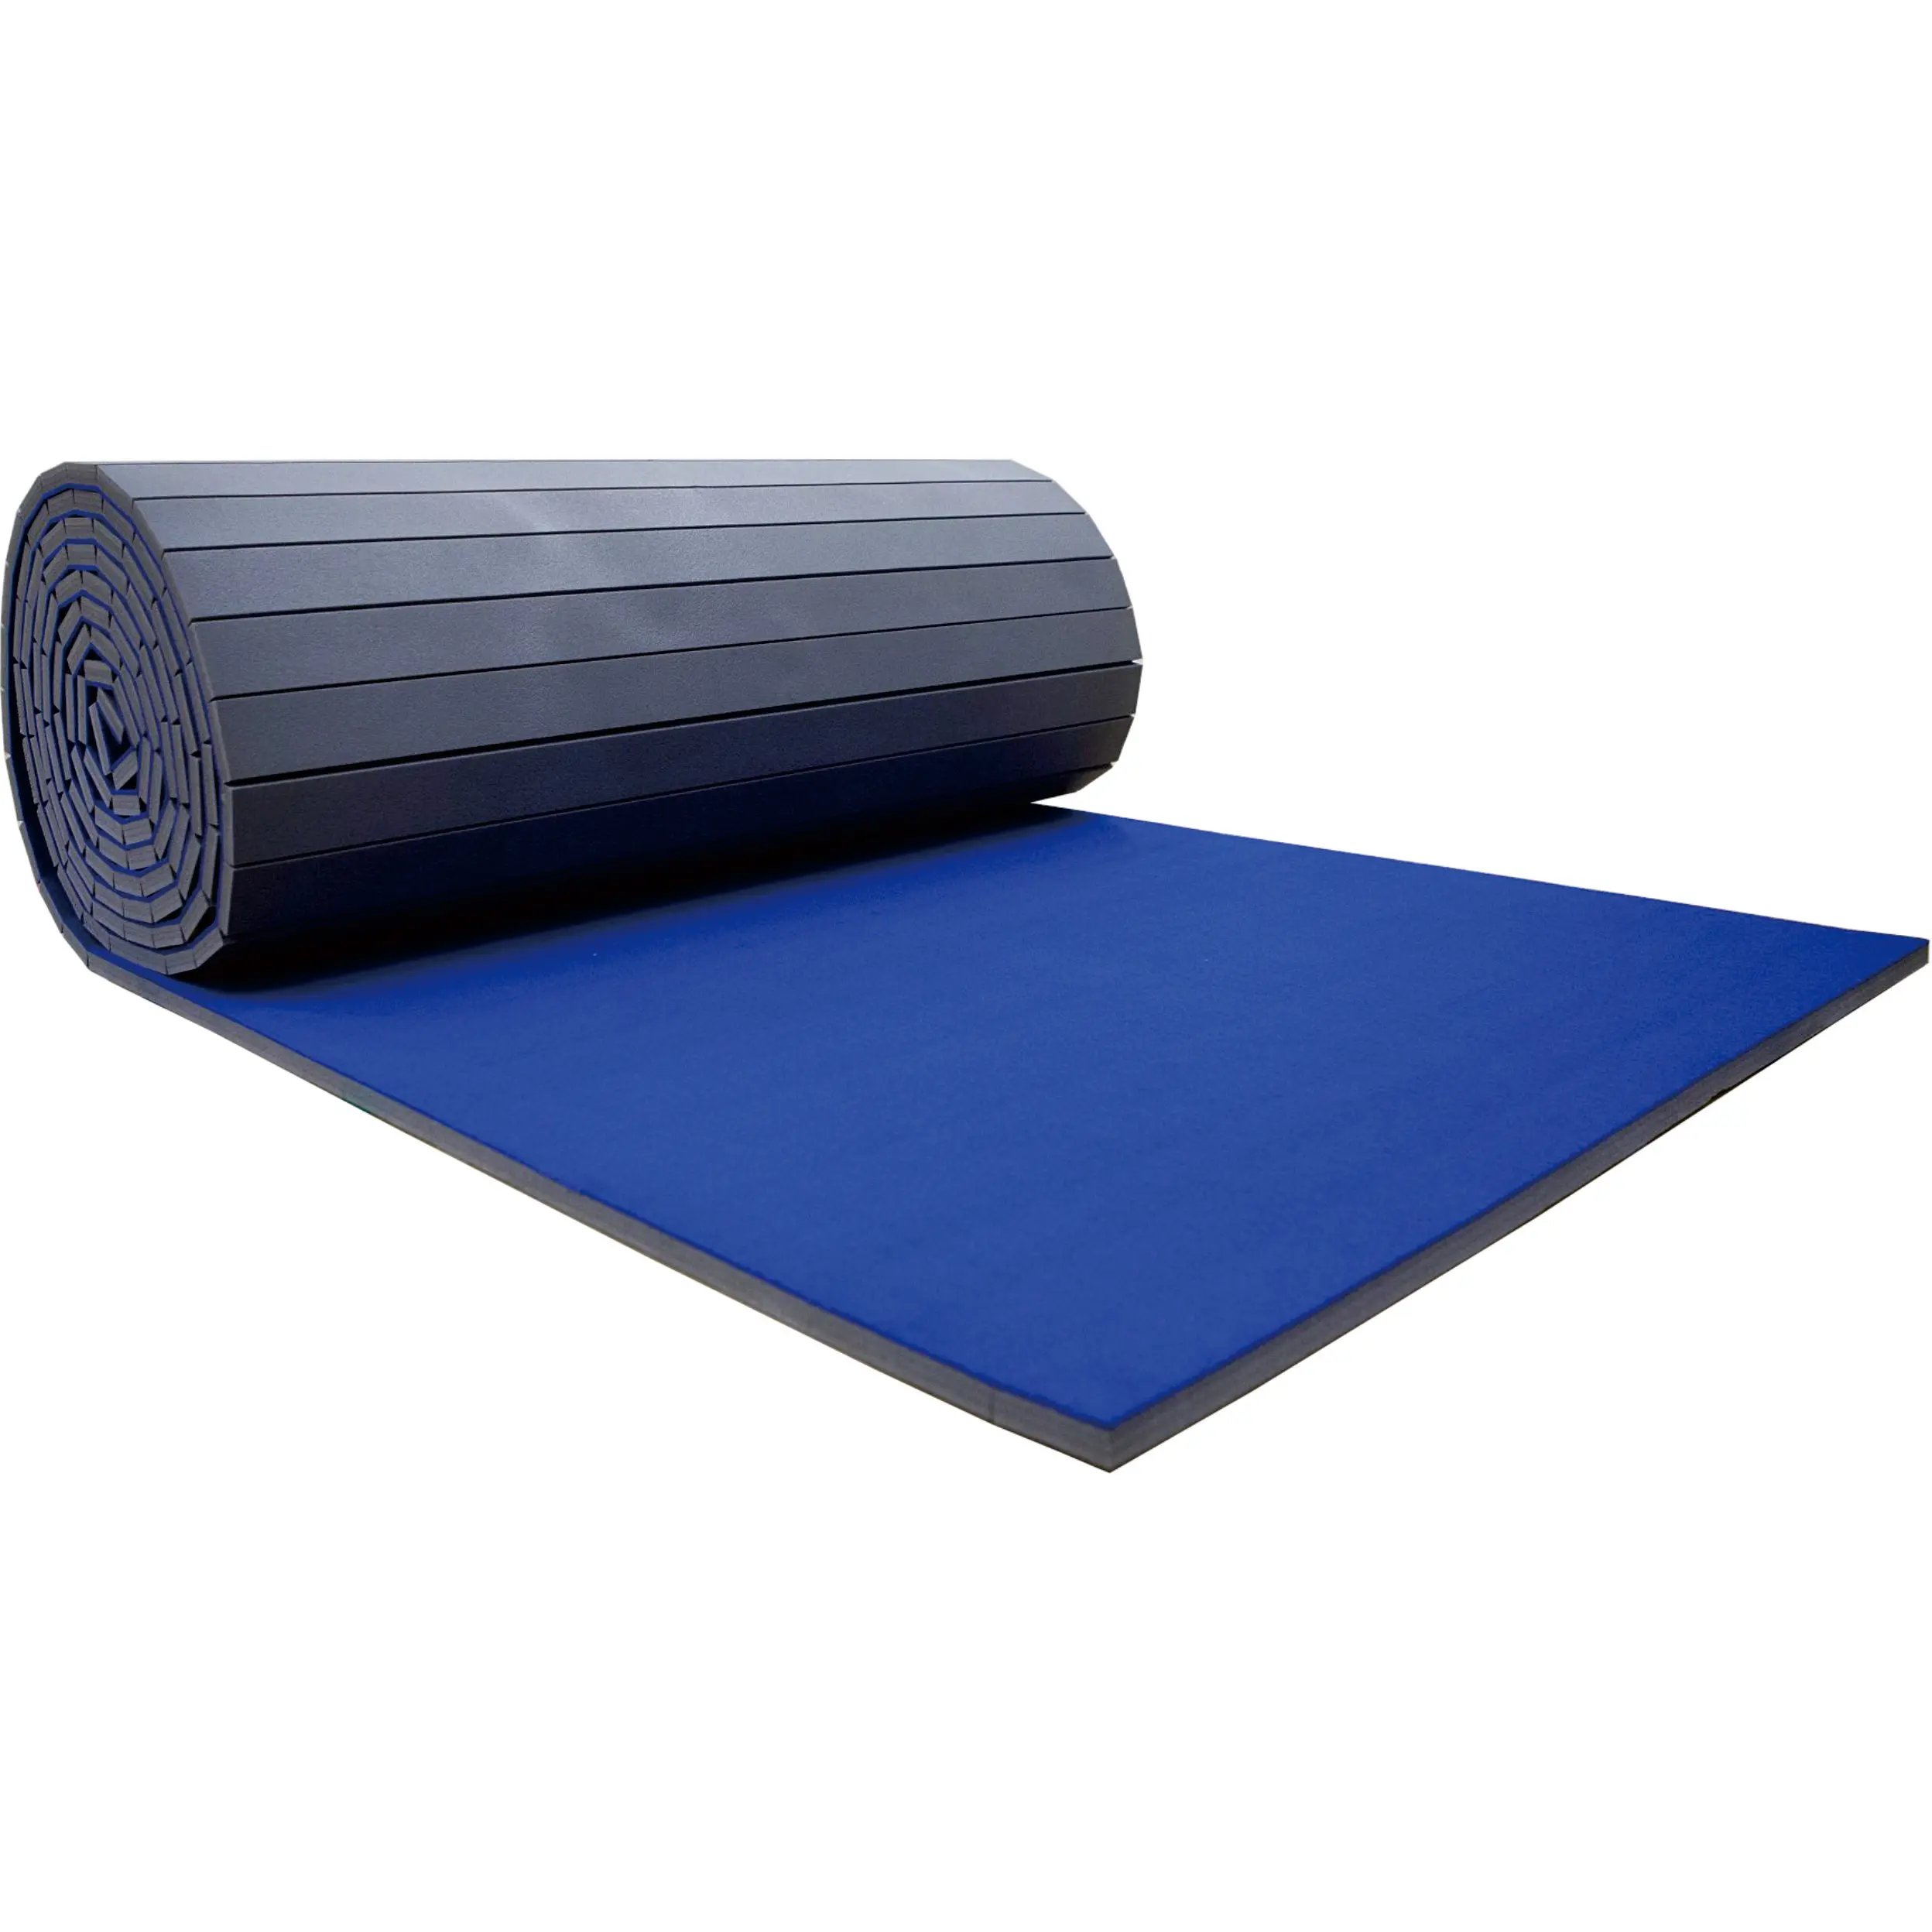 Goedkope Roll out cheer foam mat cheerleading gebruikt gymnastiek tumbling gym matten voor cheerleaders